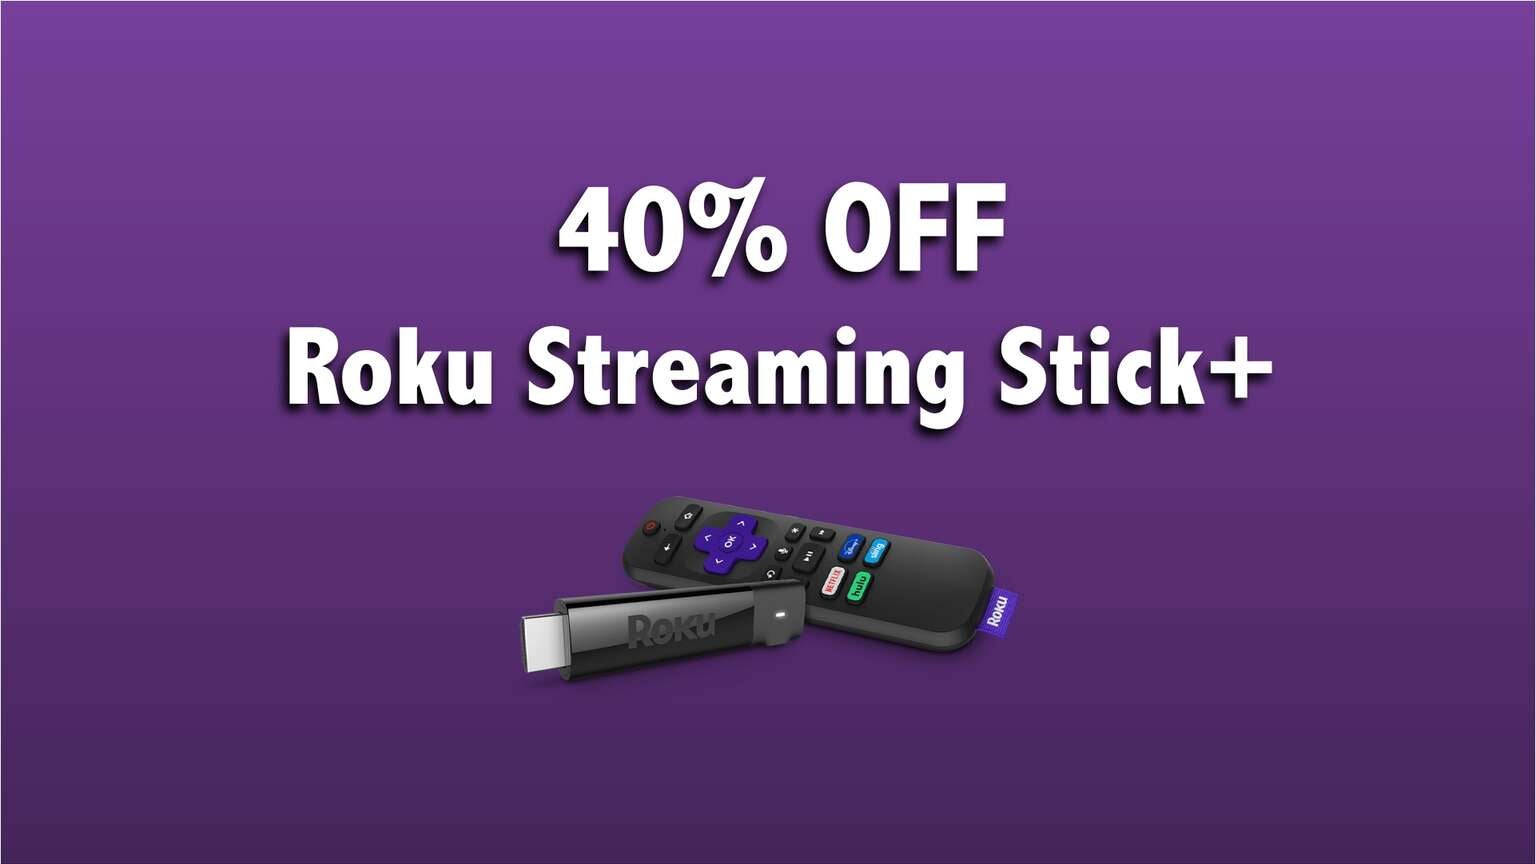 BLACK FRIDAY DEAL ALERT Get Roku Streaming Stick+ For Just 29.99 (40